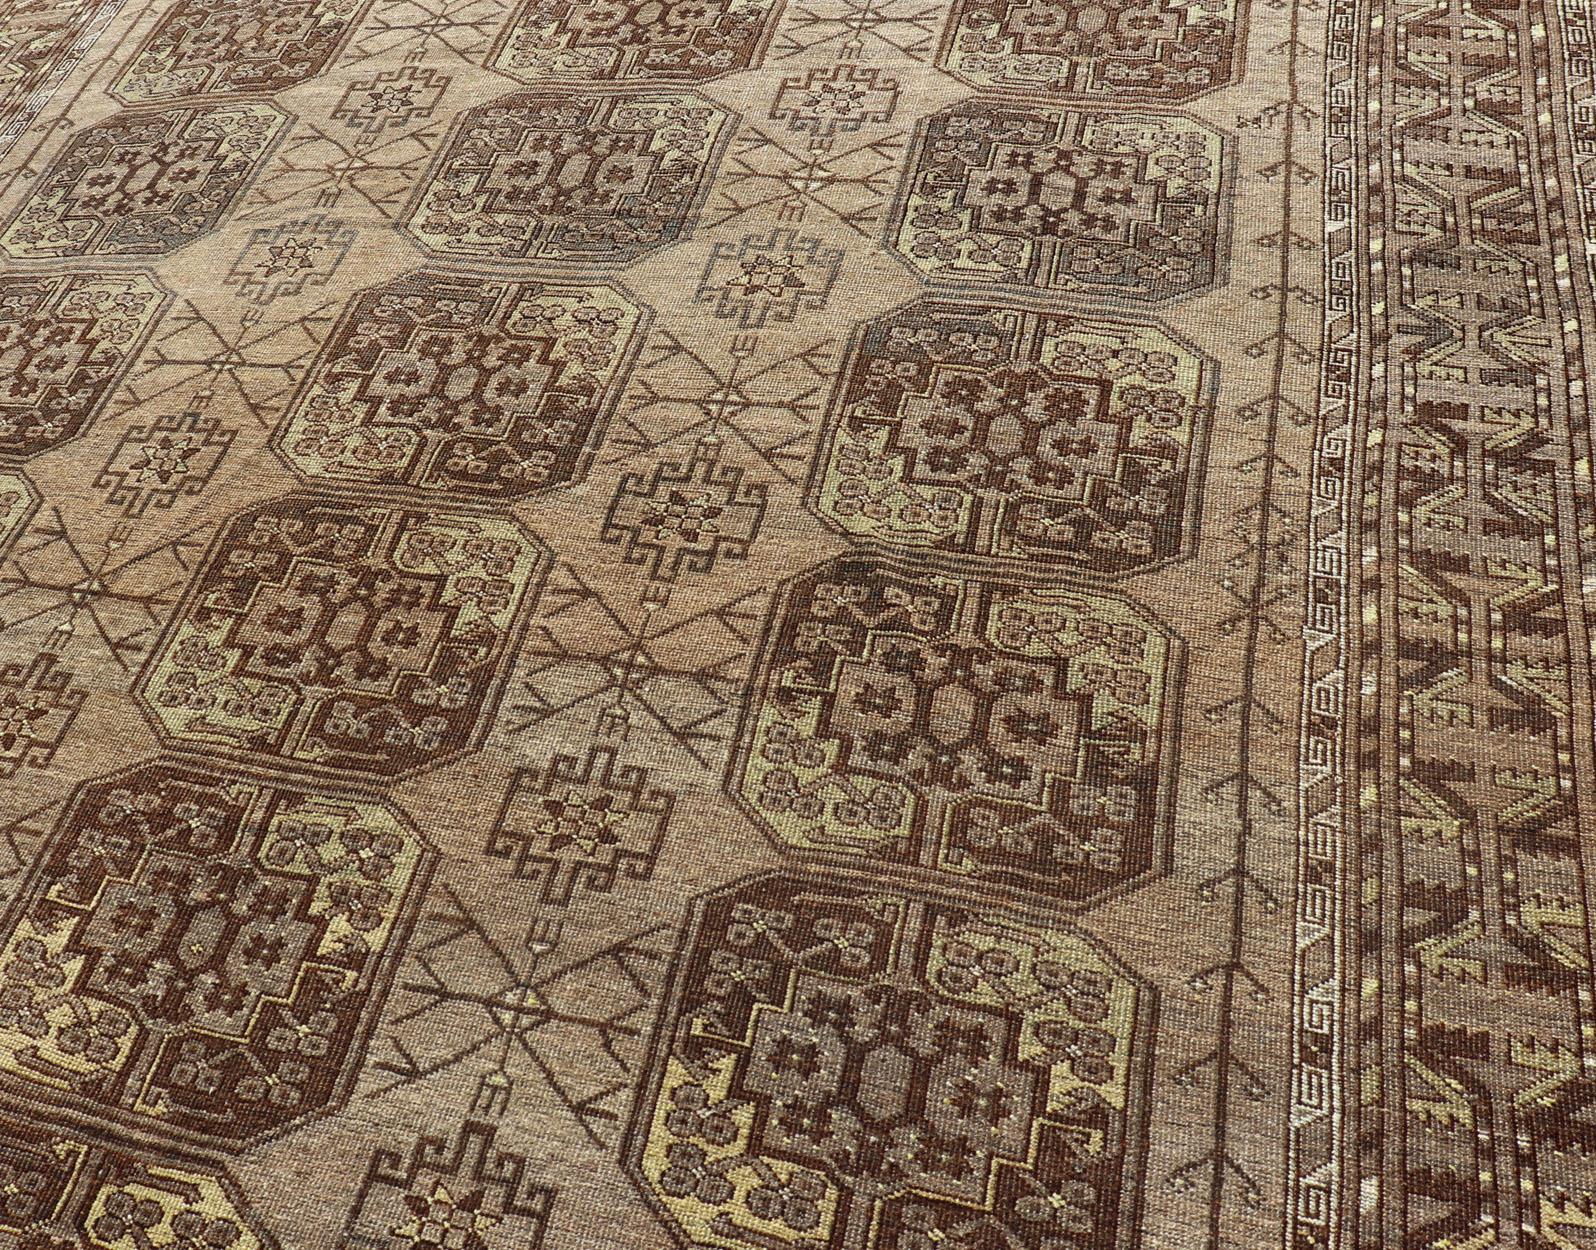 Dieser türkische Ersari-Teppich wurde aus feinster Wolle handgeknüpft. Der Teppich weist ein sich wiederholendes Gul-Muster auf, das sich über den gesamten Teppich erstreckt und von einer komplementären, mehrstufigen Bordüre mit kleinen, sich